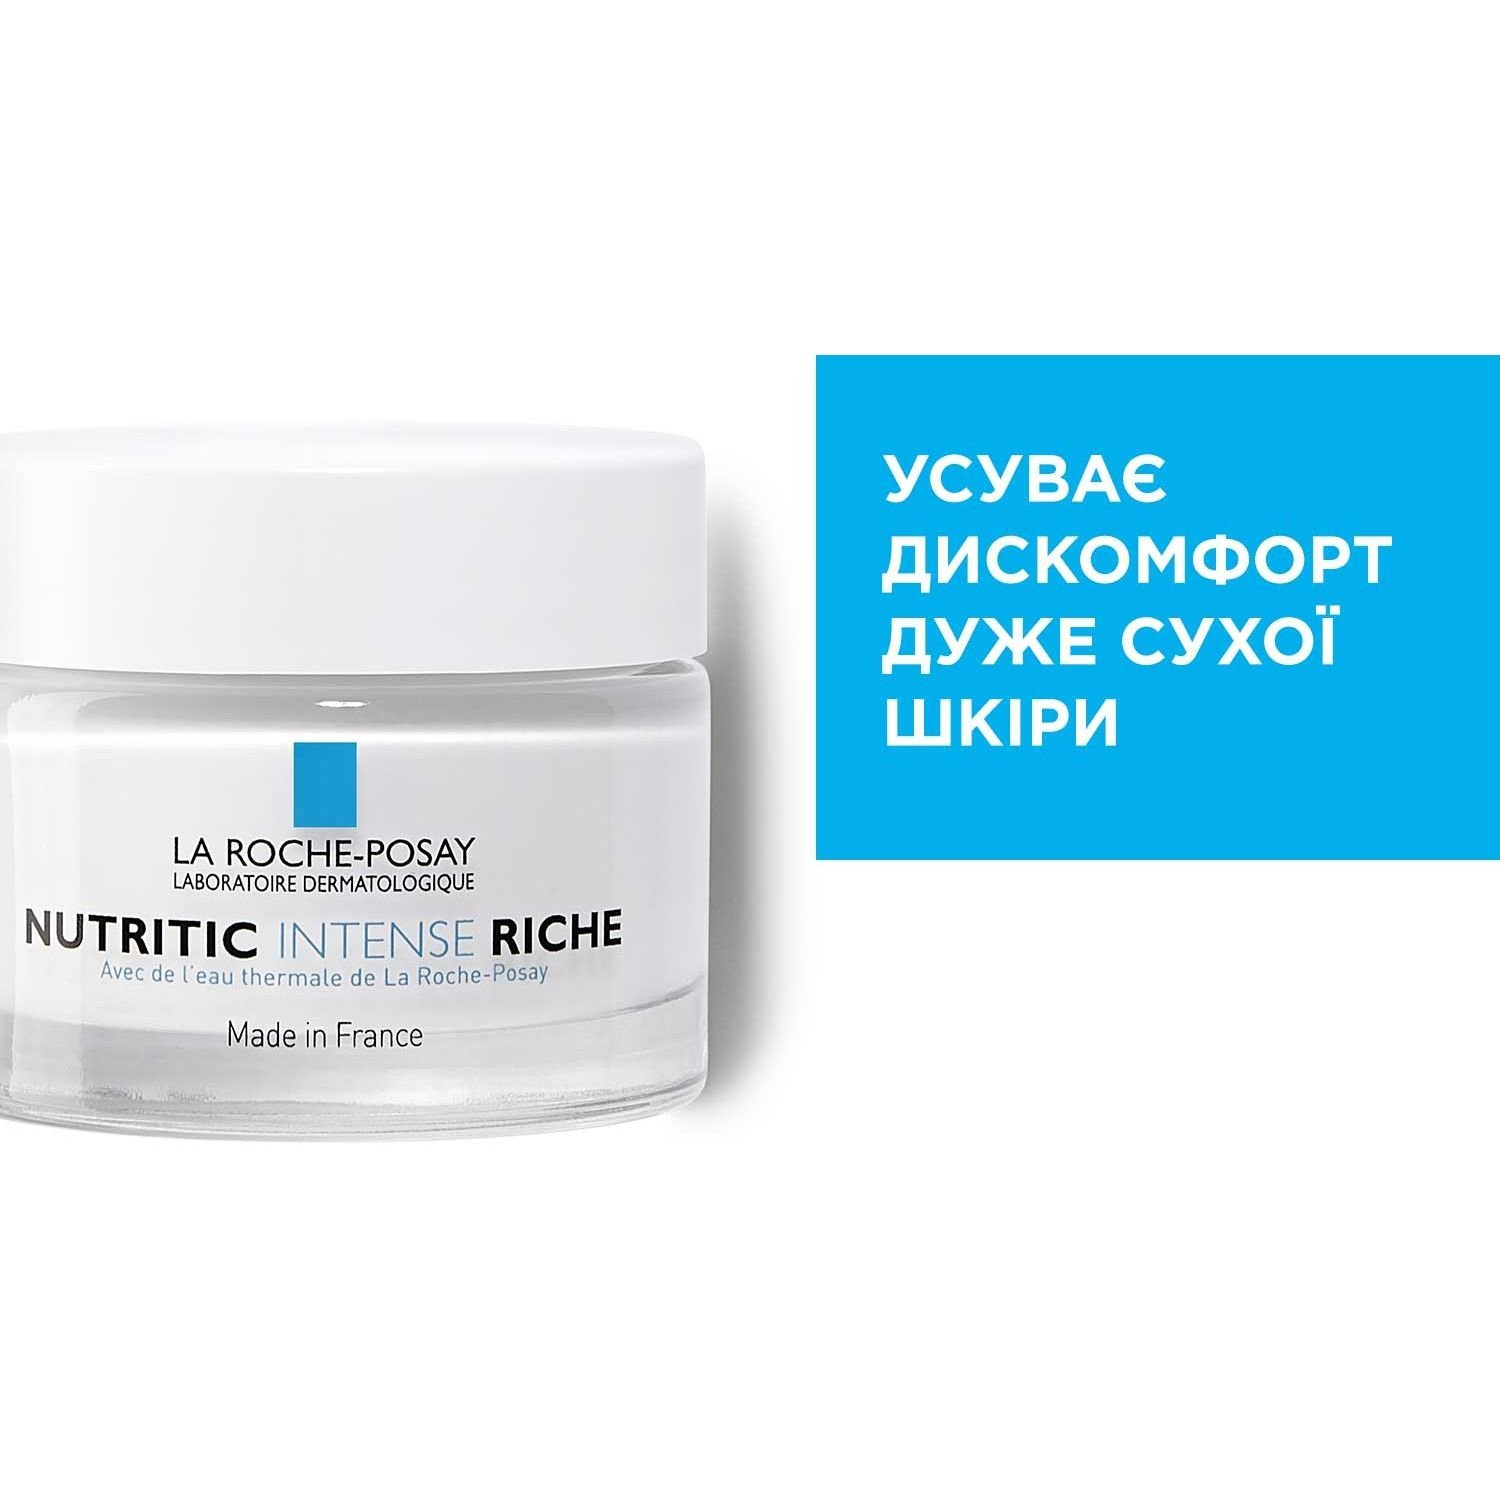 Питательный реконструирующий крем La Roche-Posay Nutritic Intense Riche, для сухой кожи, 50 мл - фото 2